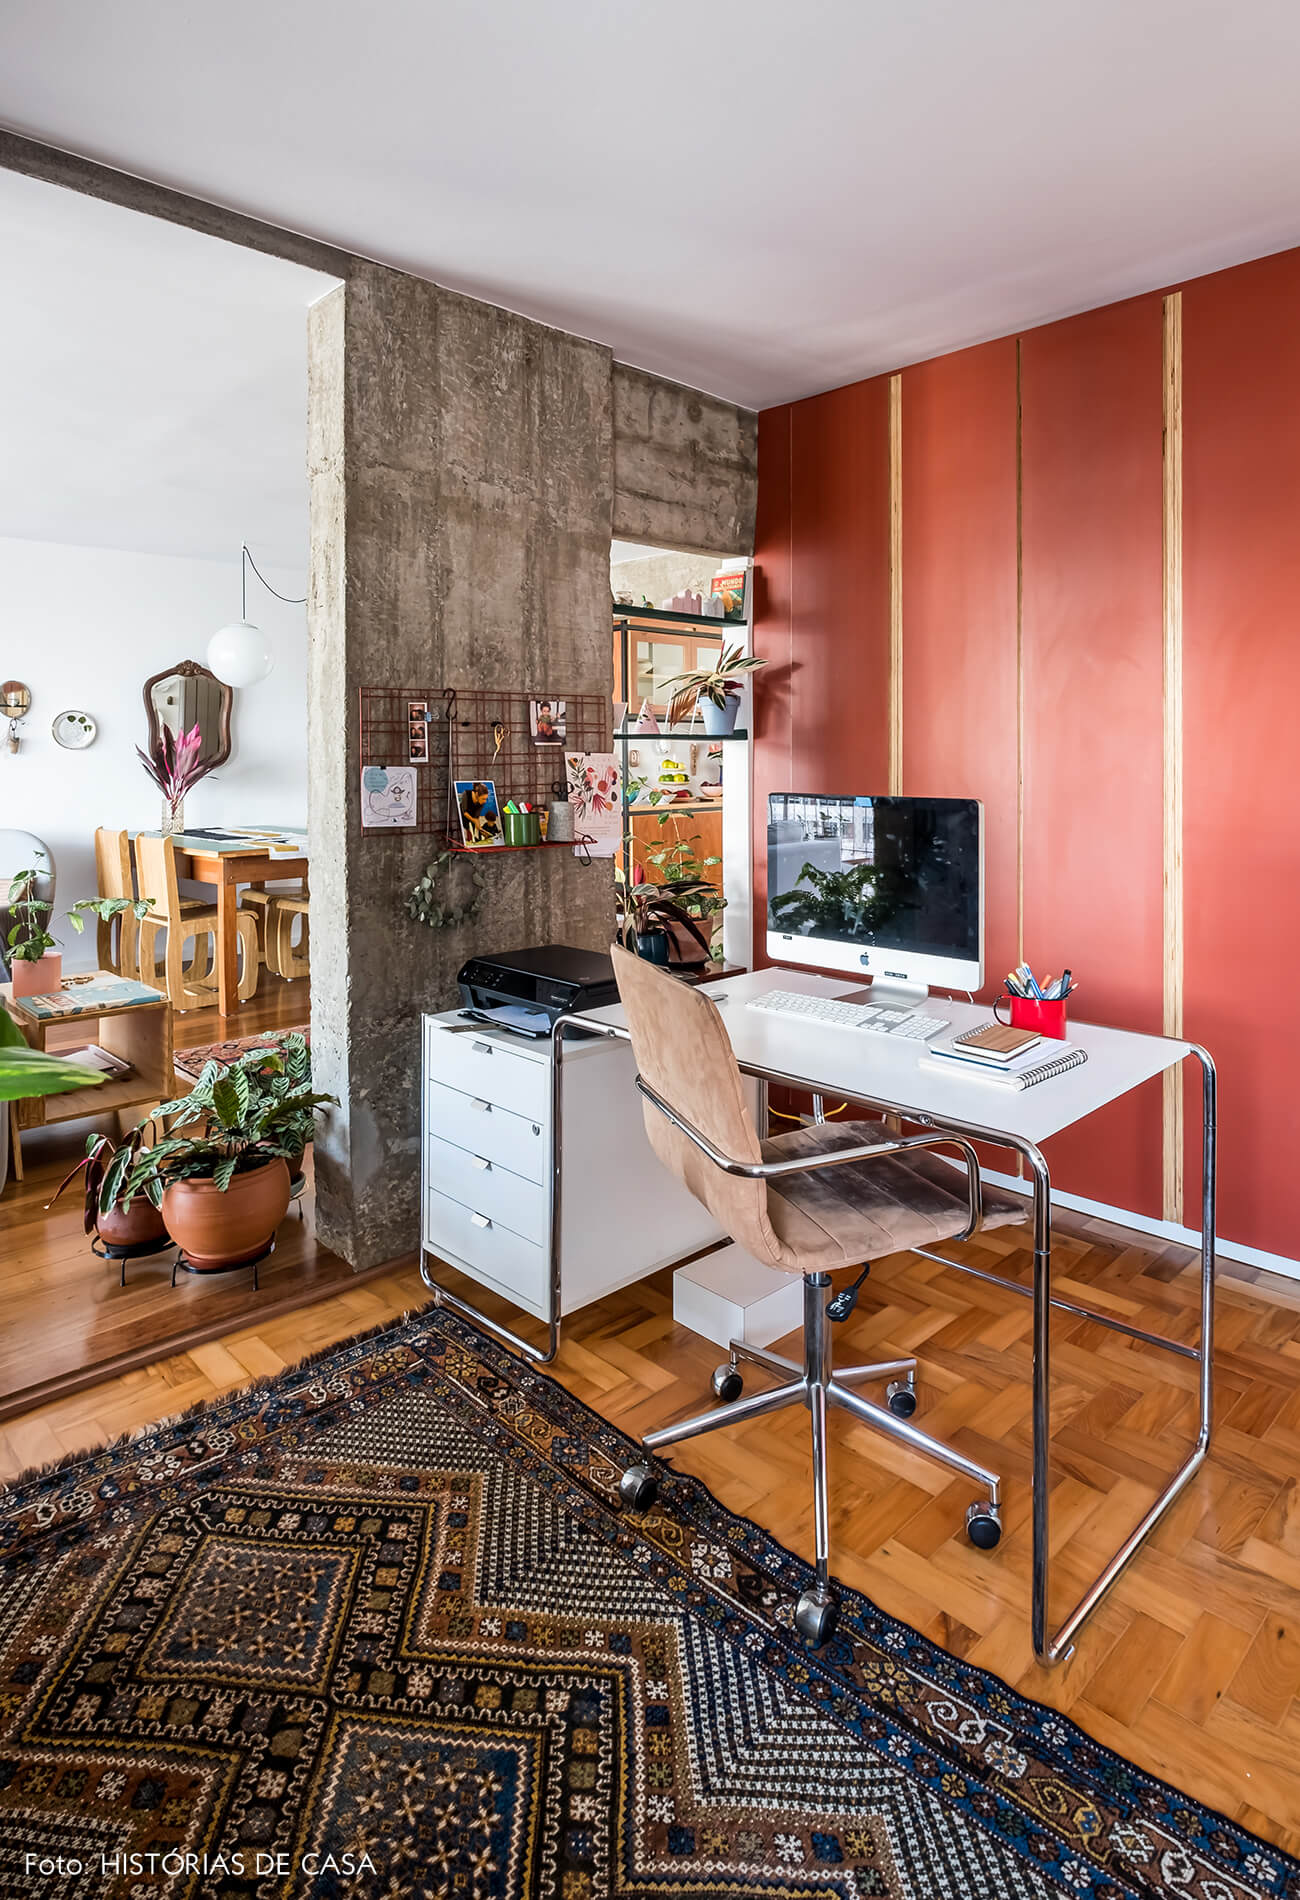 Home office integrado com a sala, móveis de Formica colorida